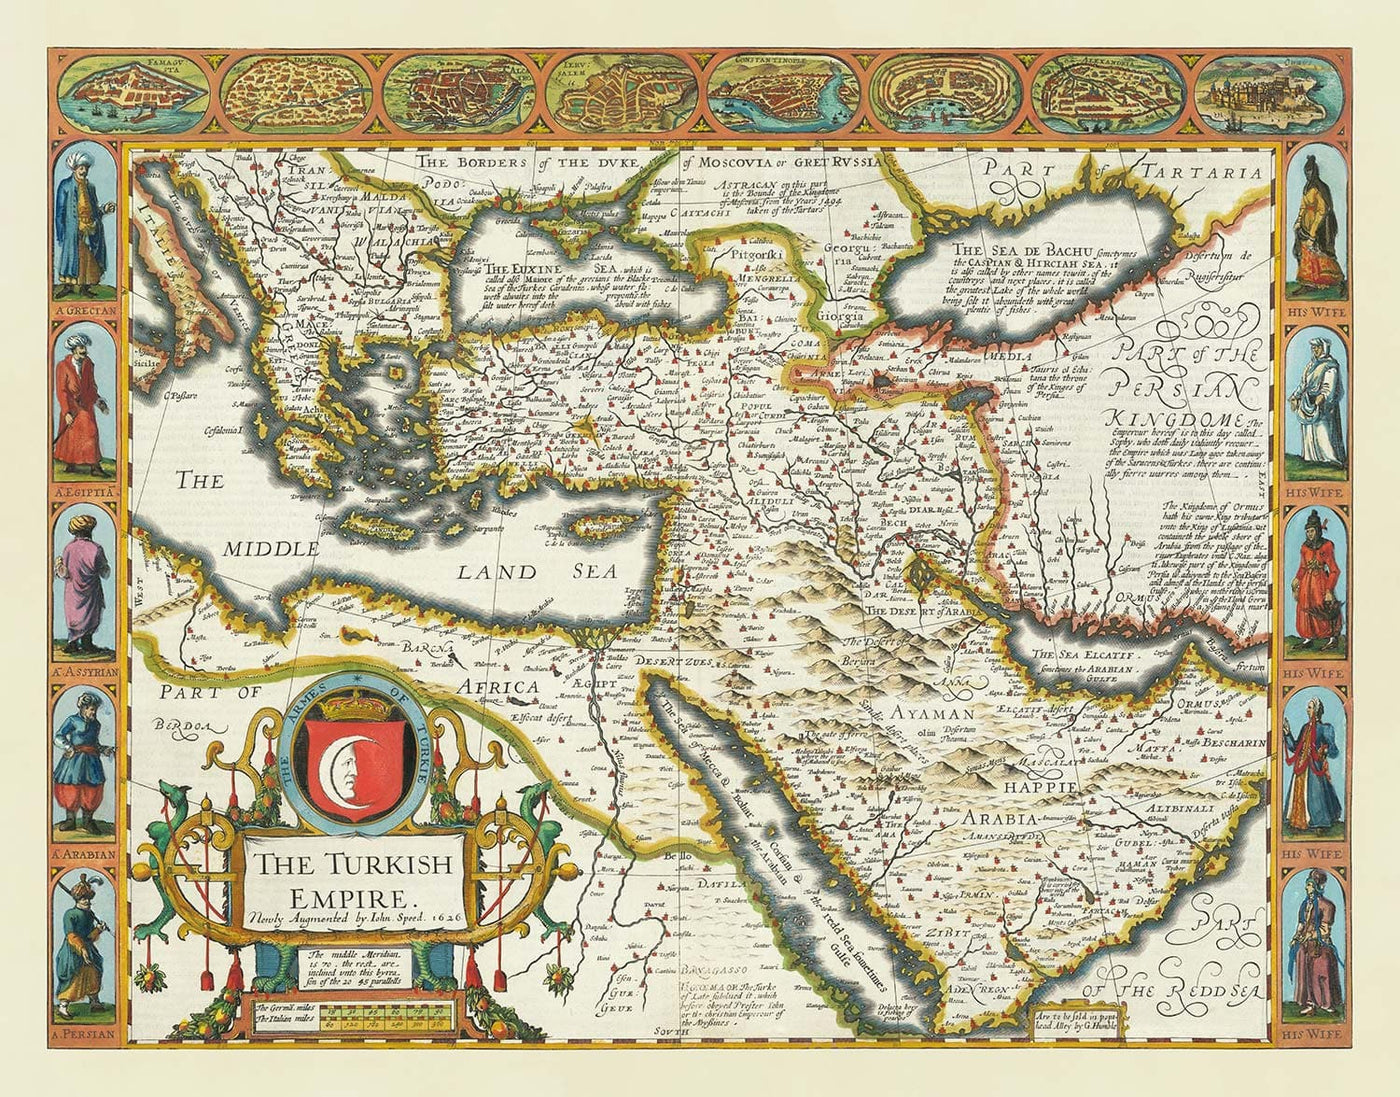 Ancienne carte de l'empire turc / ottoman de John Vitesse, 1627 - Turquie, Balkans, Grèce, Iran, Égypte, Syrie